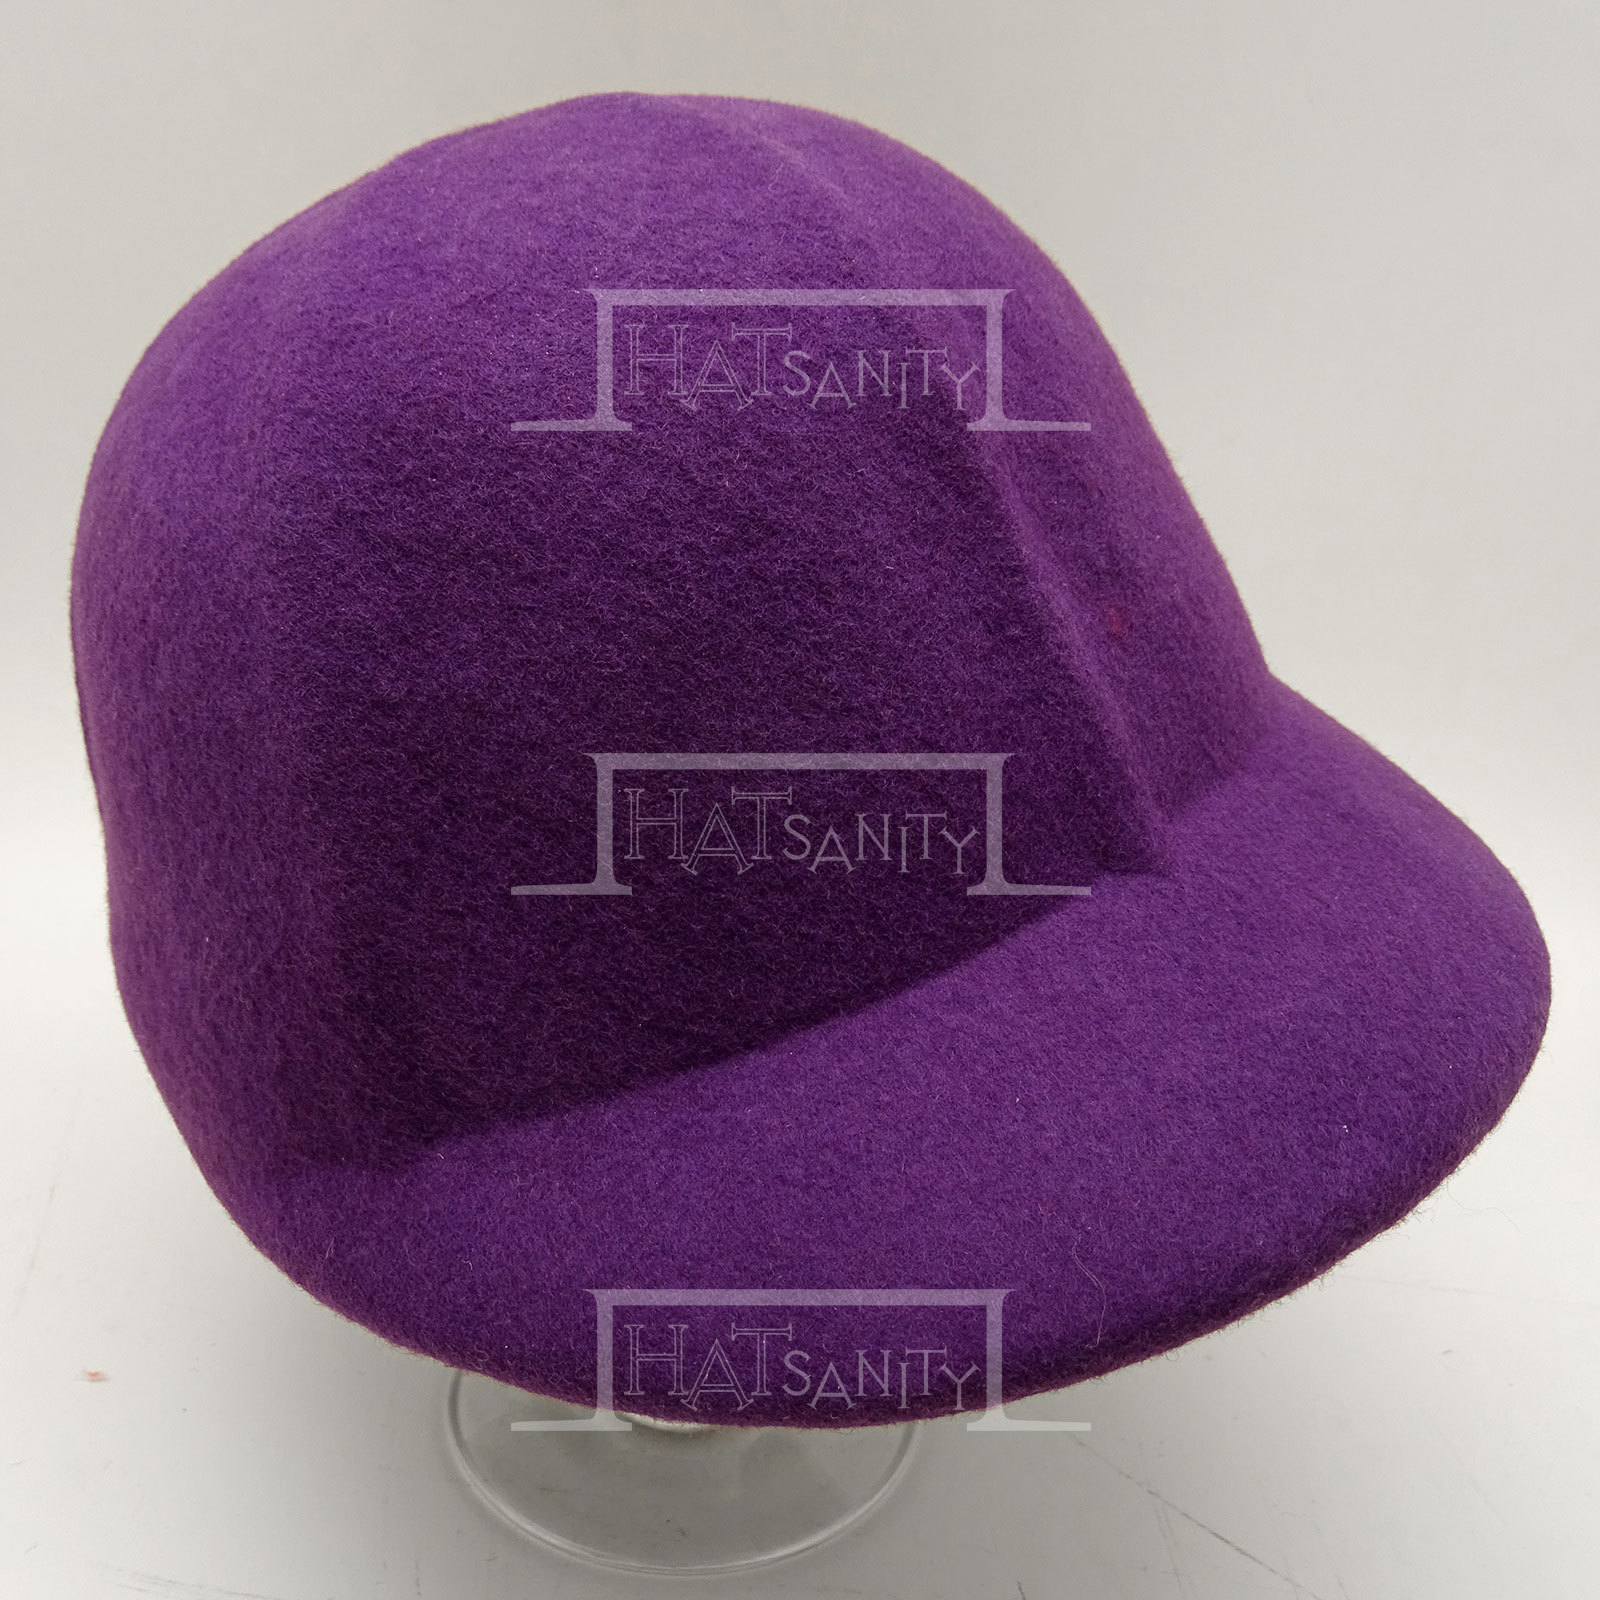 HATsanity Women's Fashion Wool Felt Casquette Riding Cap - Purple